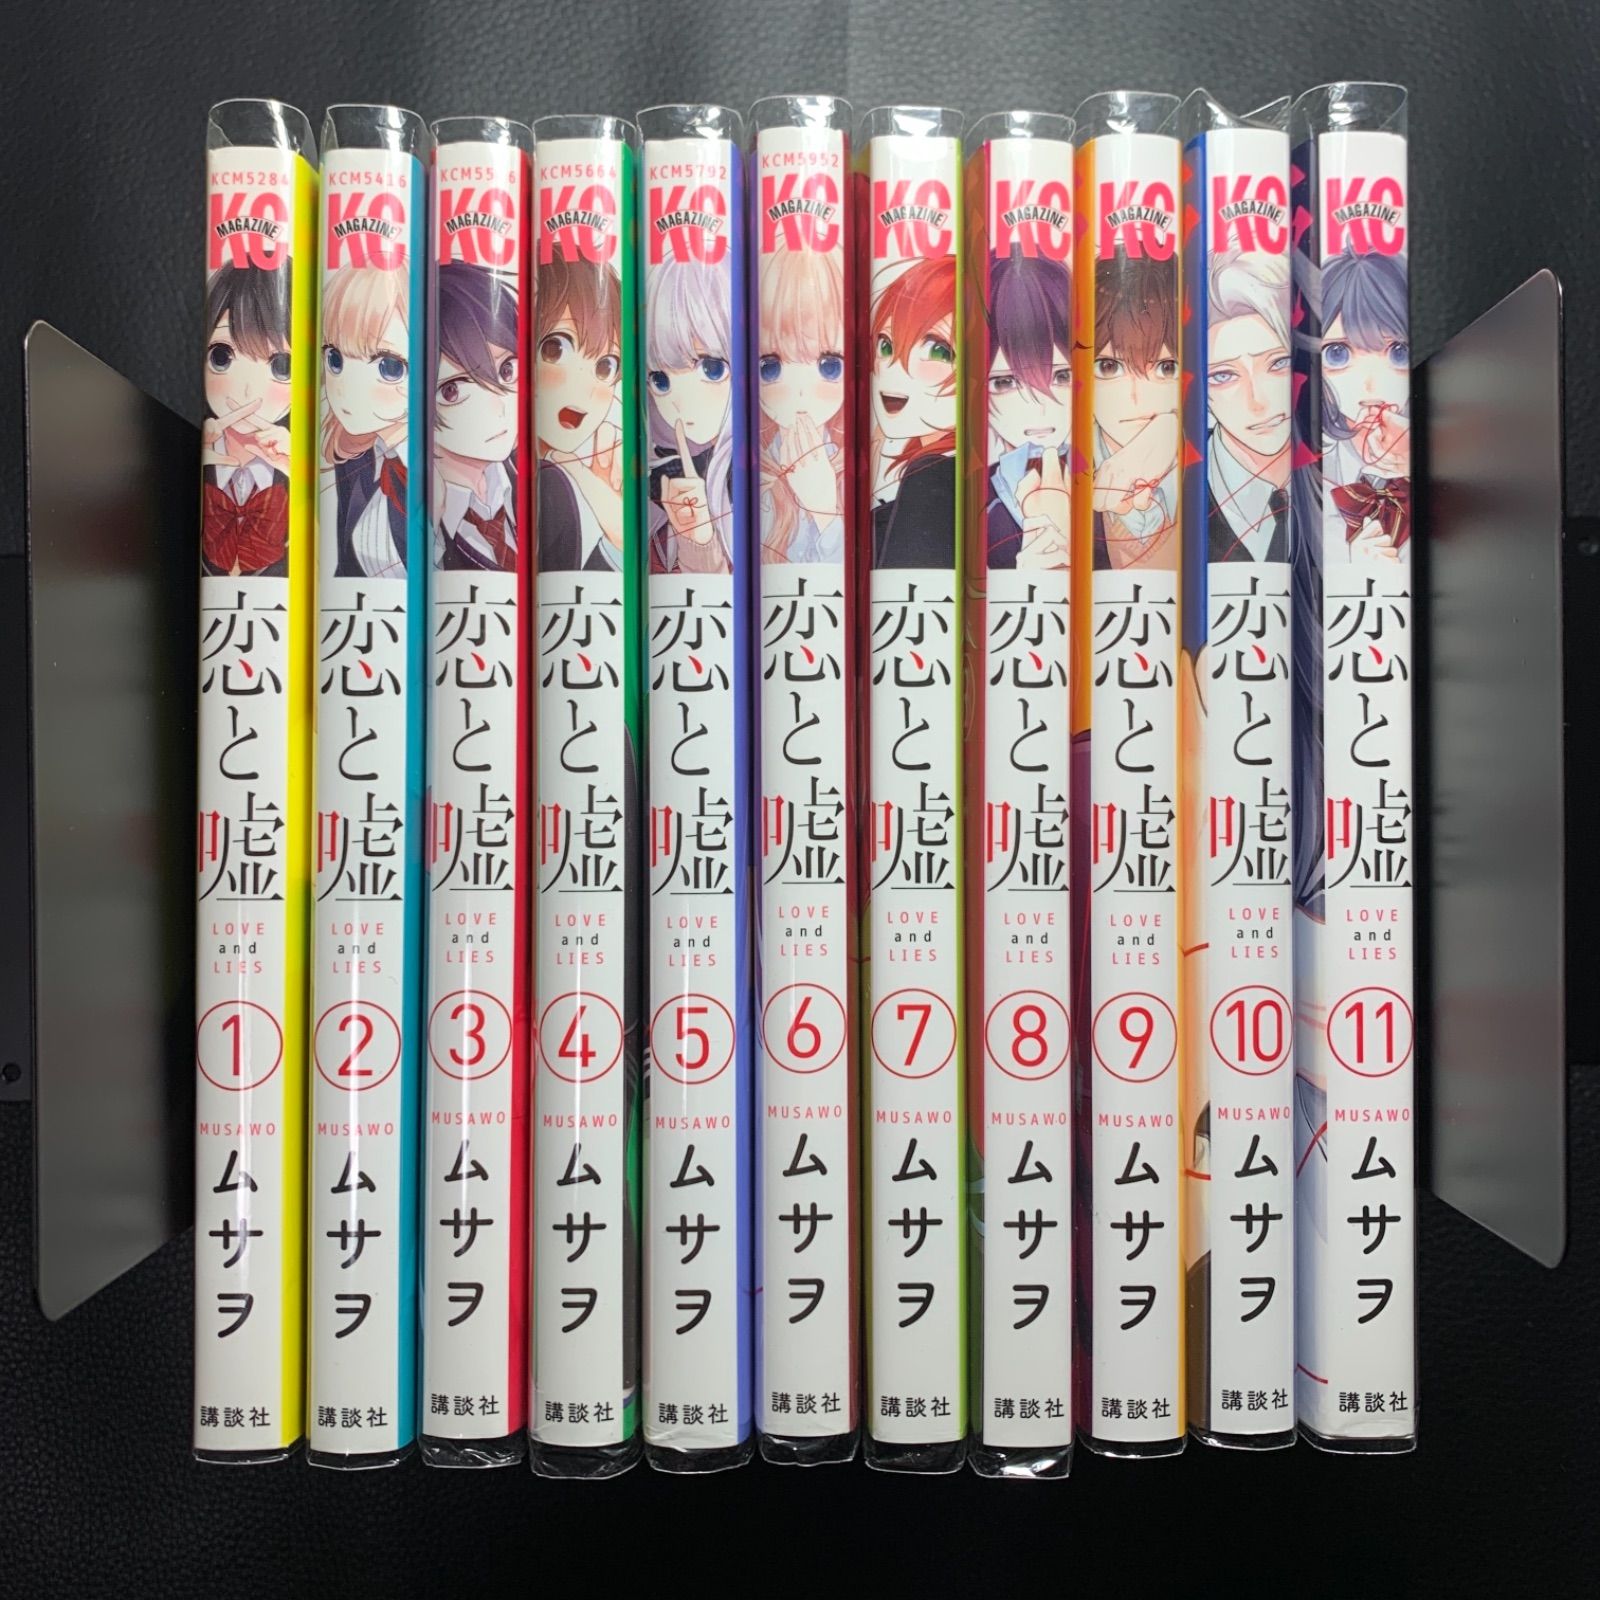 漫画喫茶落ち 恋と嘘 1〜11巻セット - HARIMA store Kobe - メルカリ